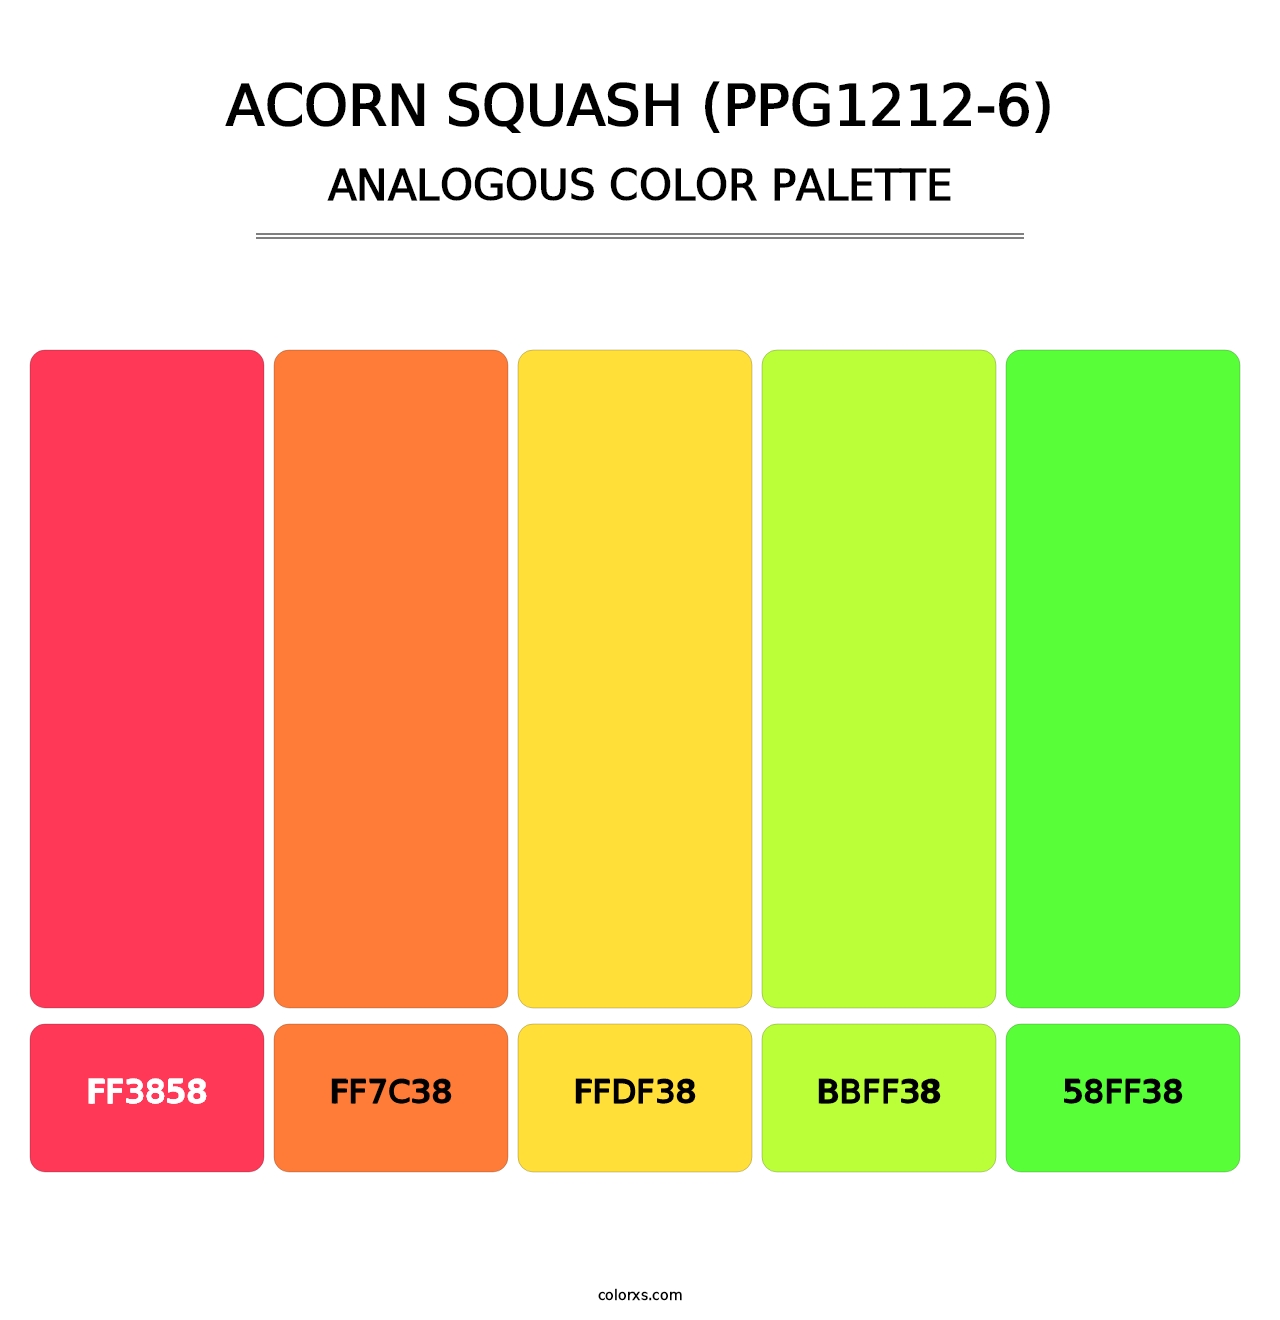 Acorn Squash (PPG1212-6) - Analogous Color Palette